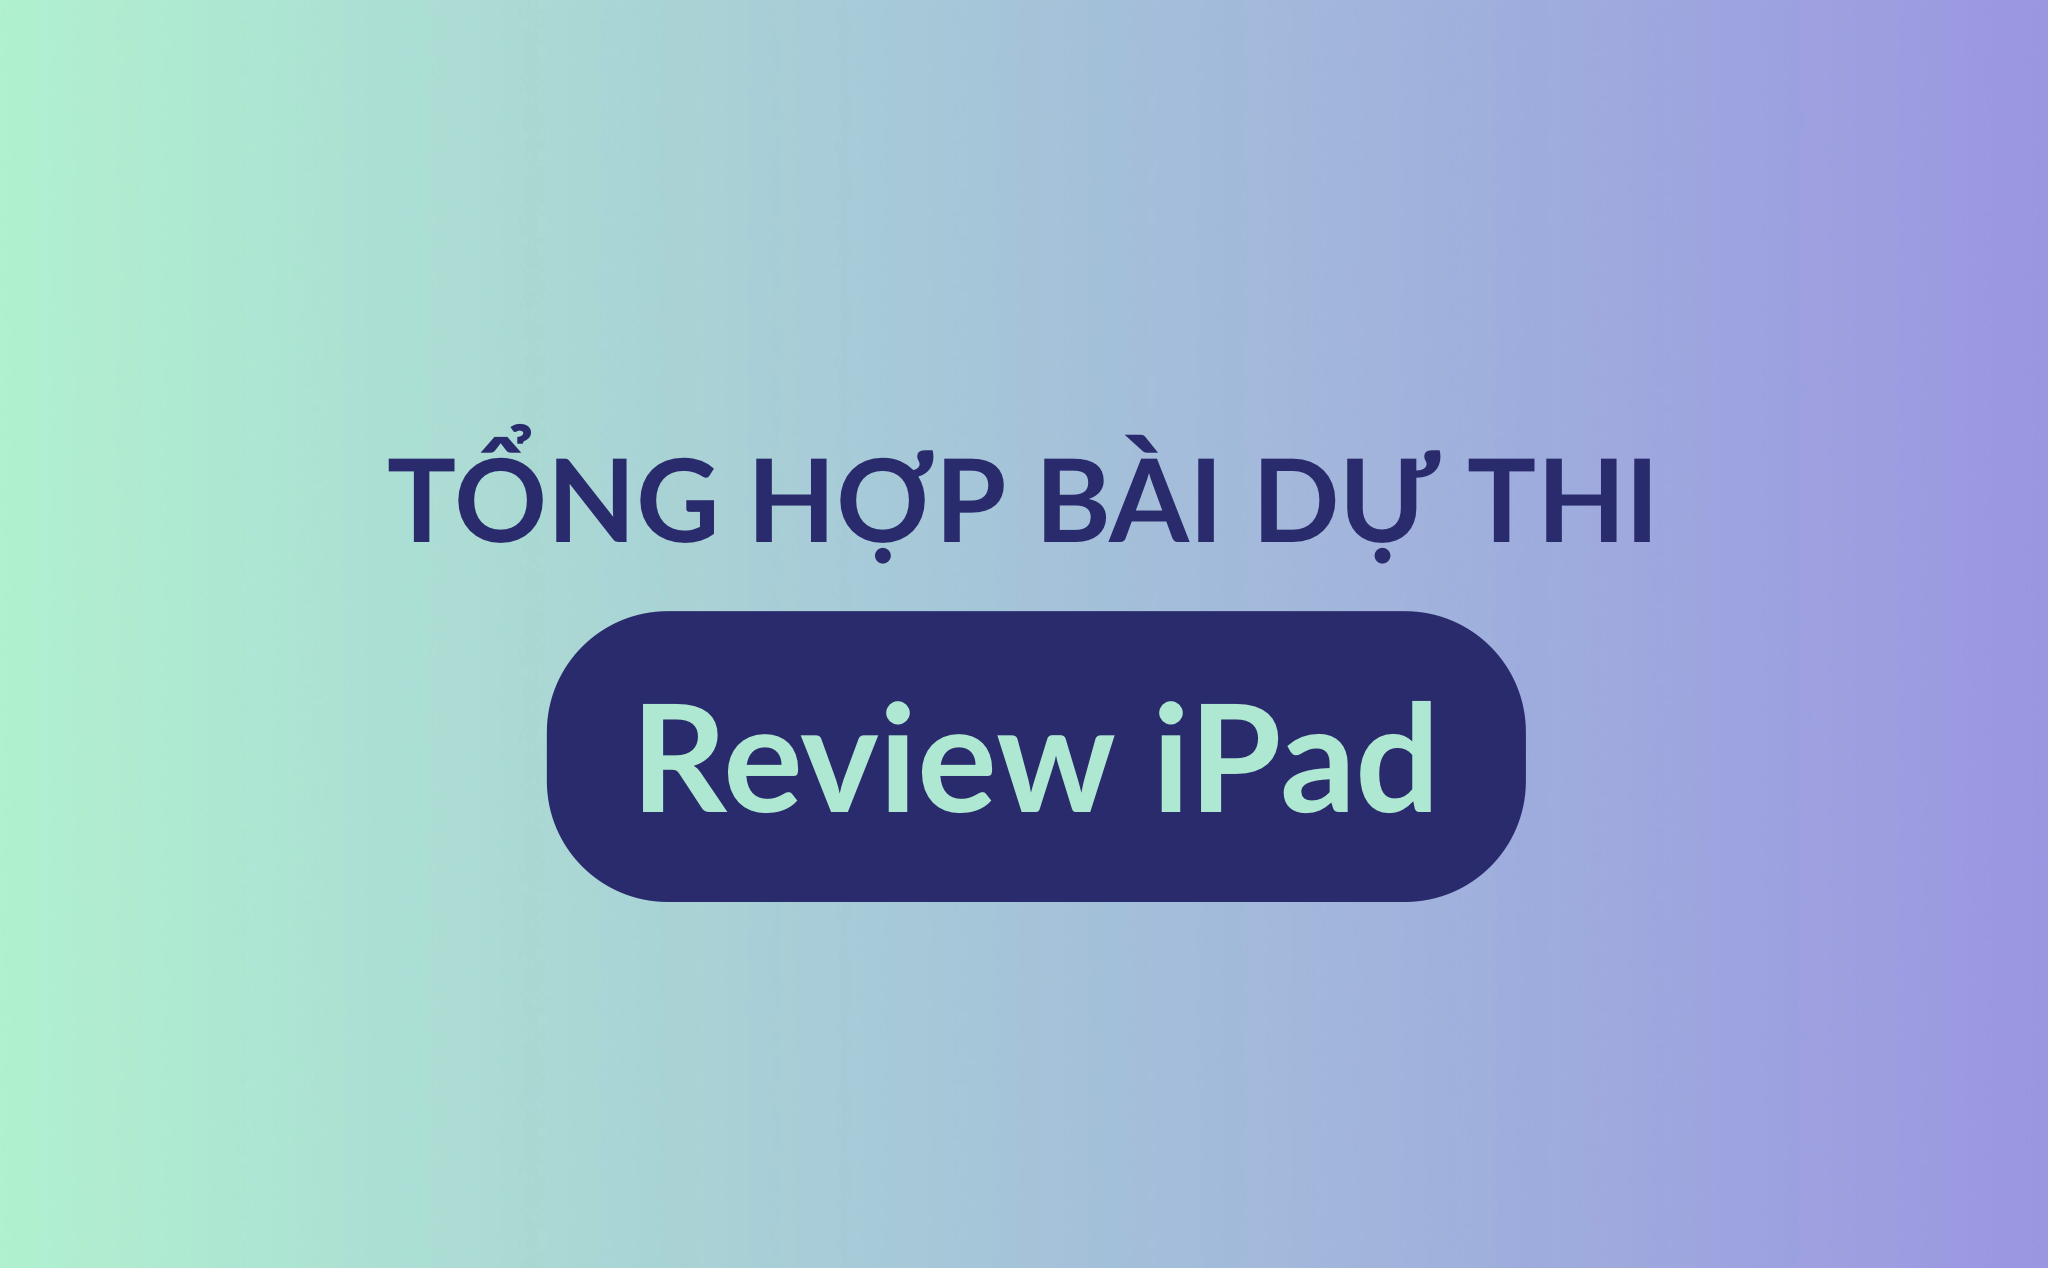 Tổng hợp các bài thi review iPad đã gửi